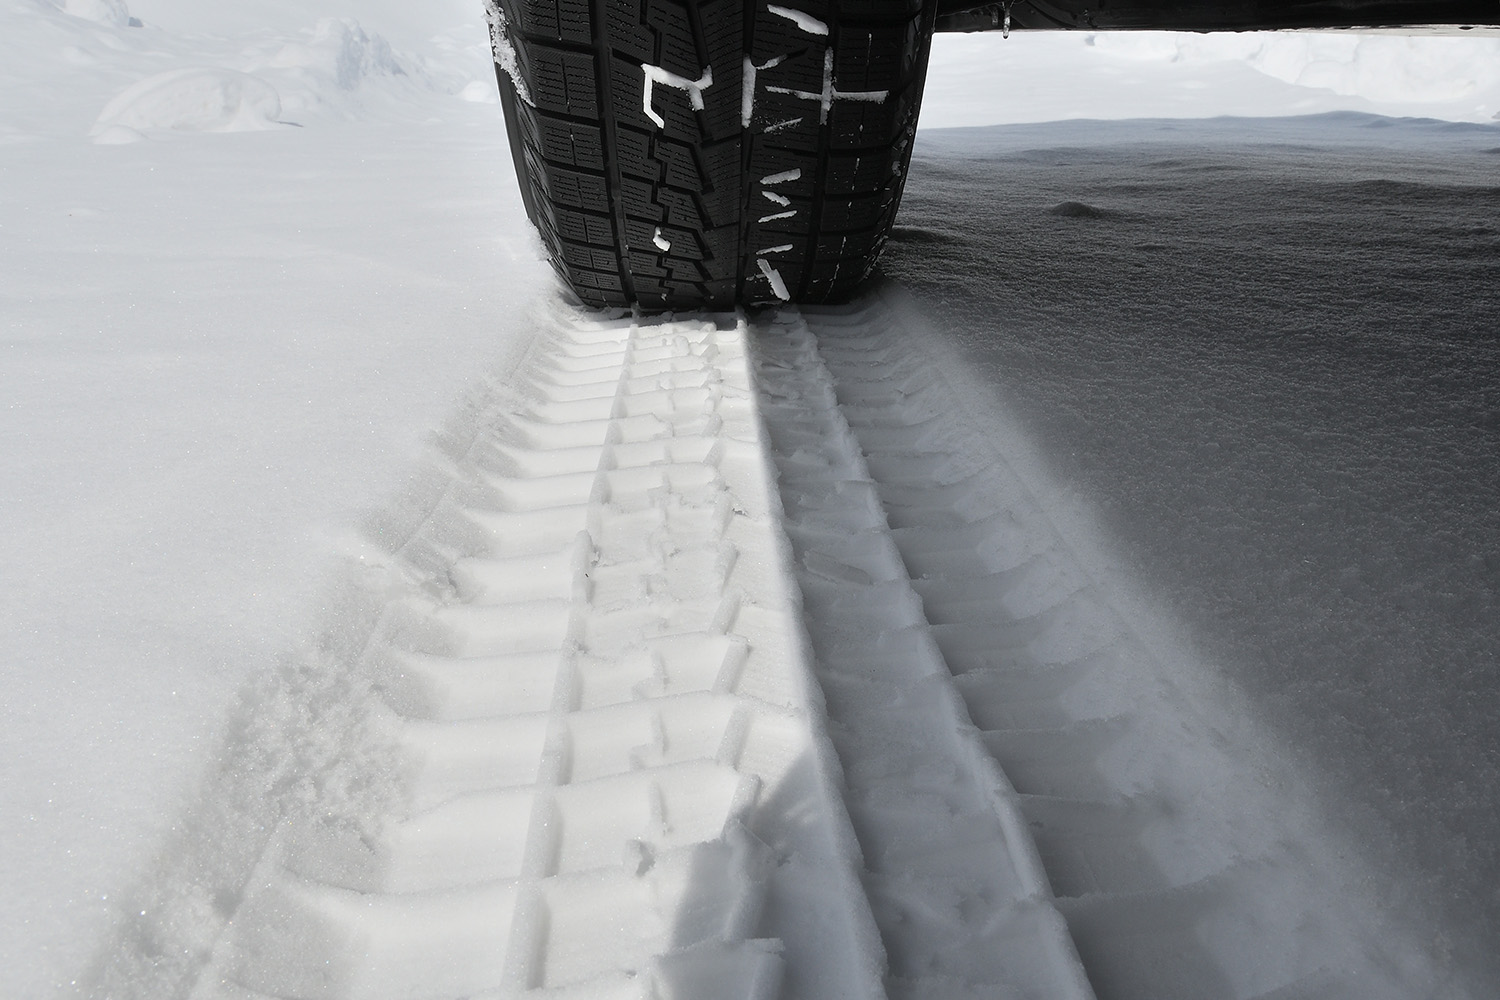 雪上に残されたスタッドレスタイヤのトレッドパターン